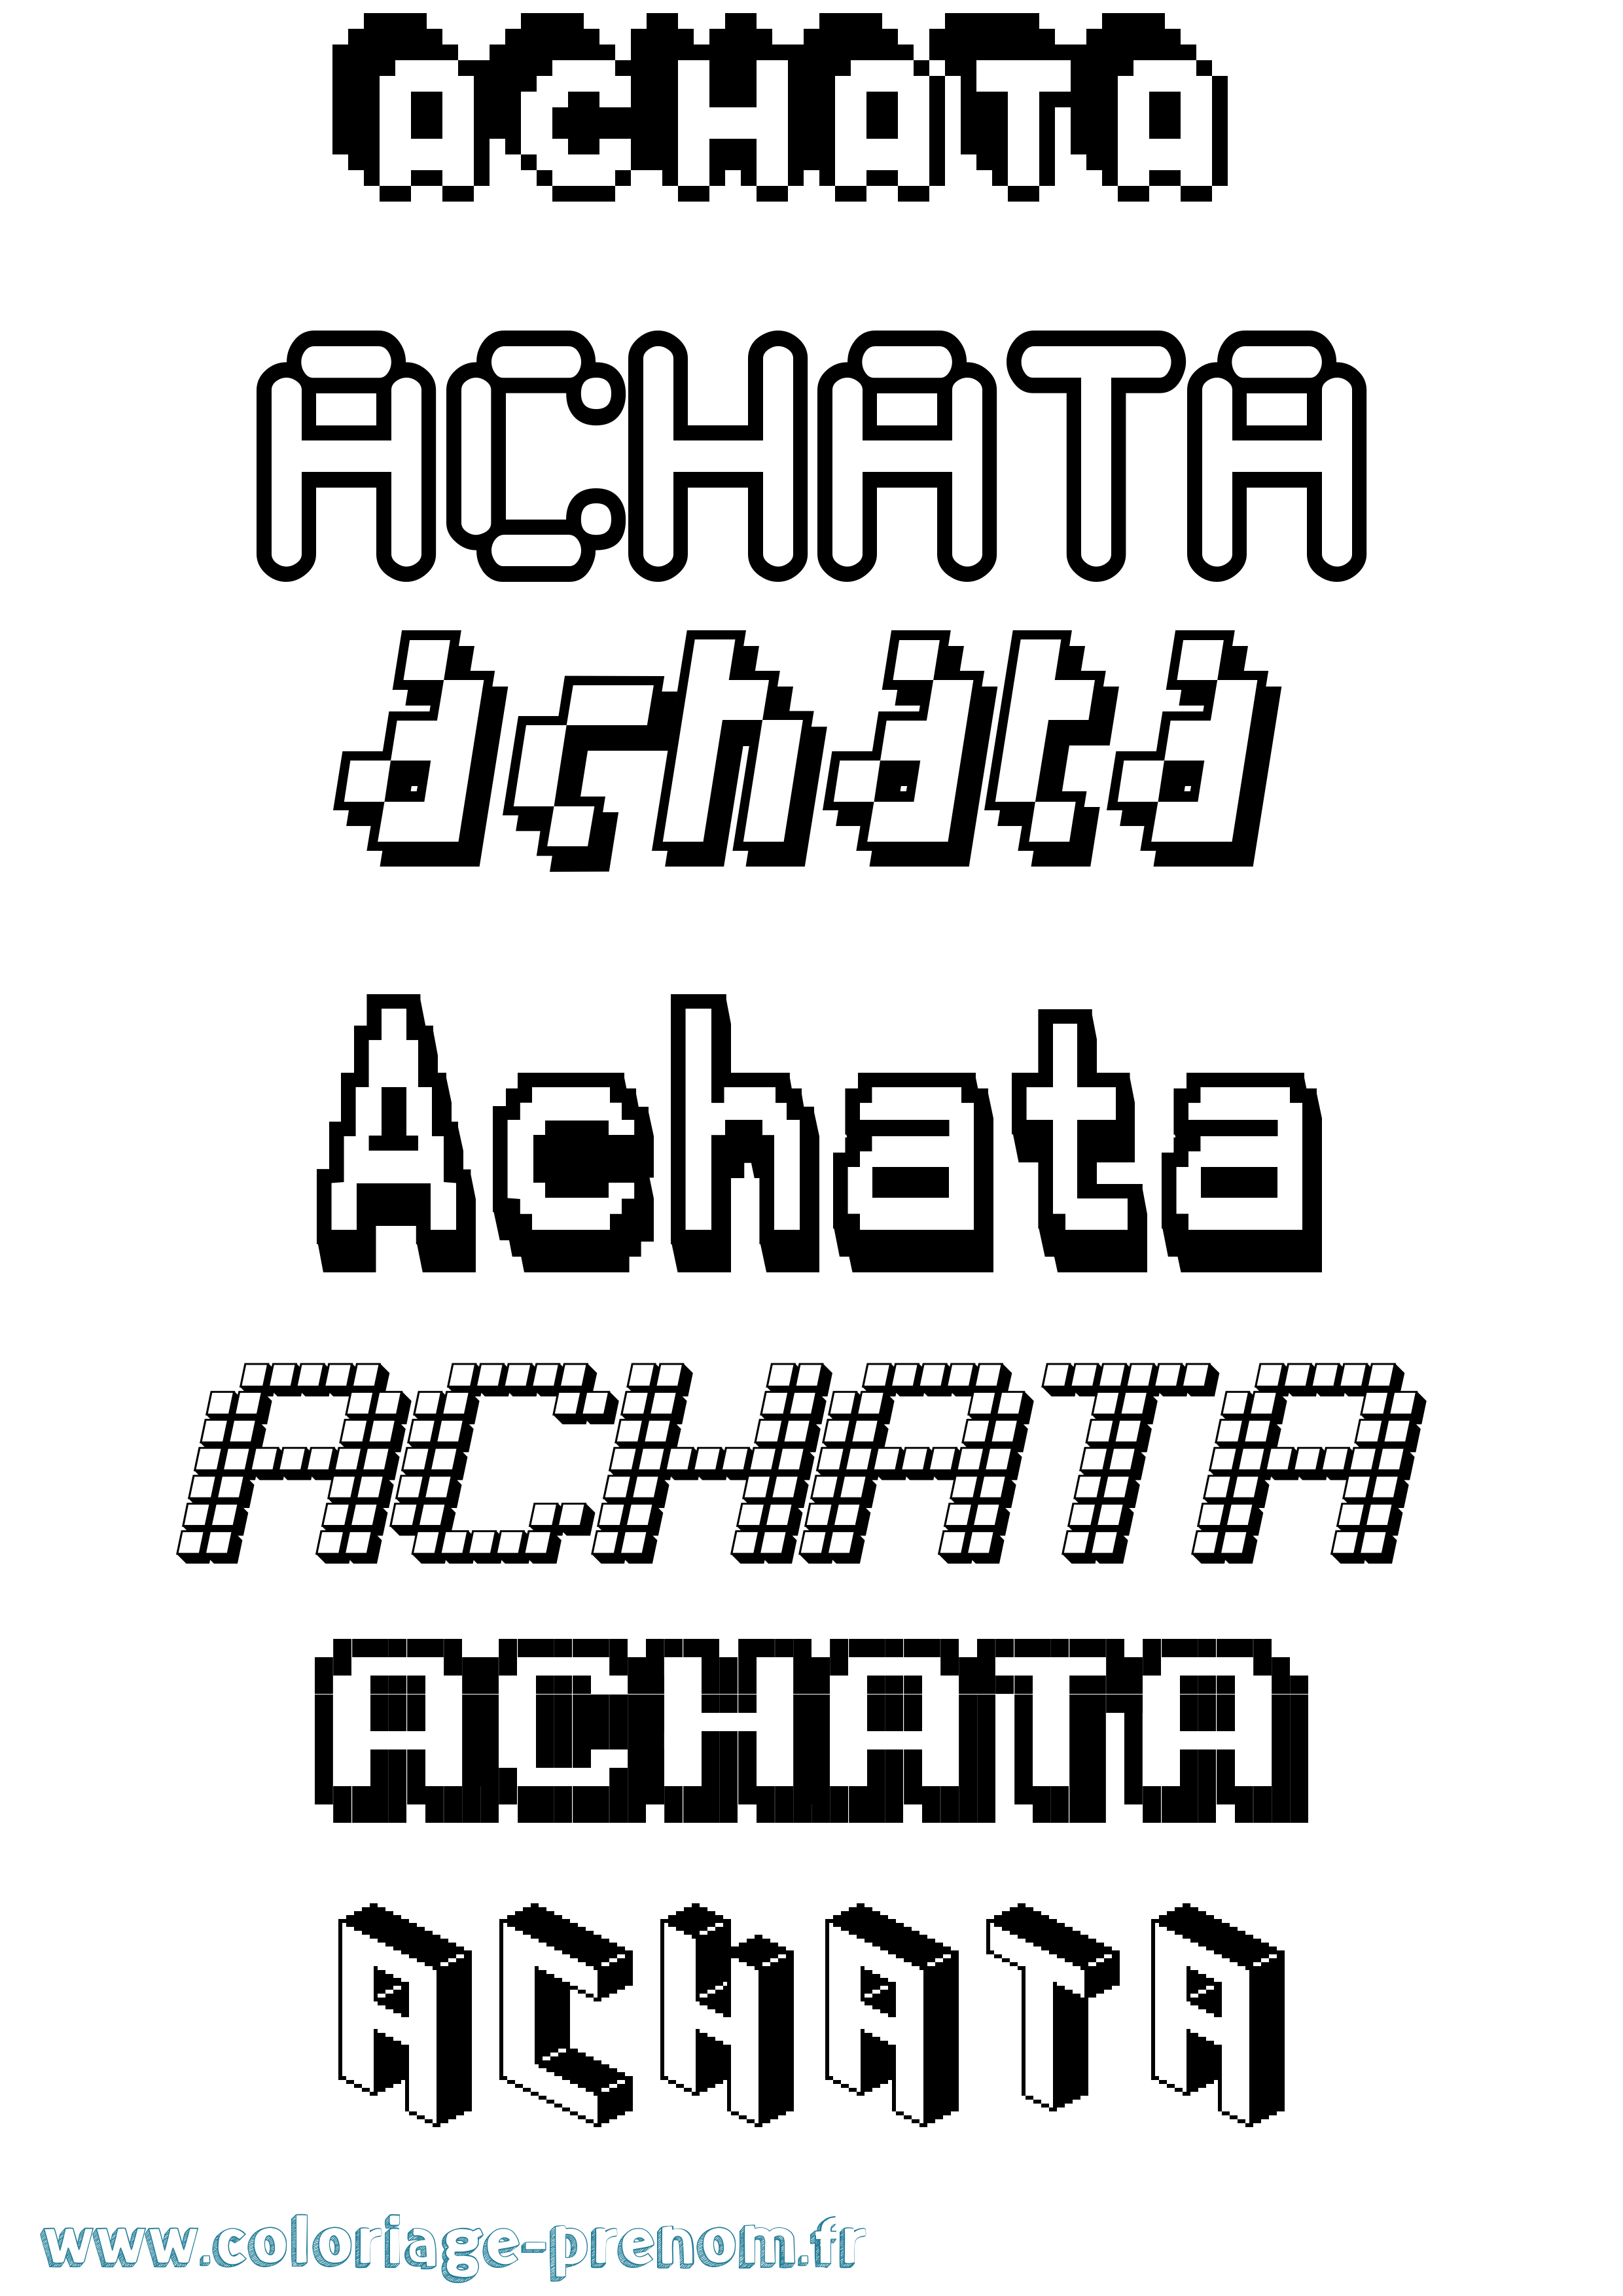 Coloriage prénom Achata Pixel